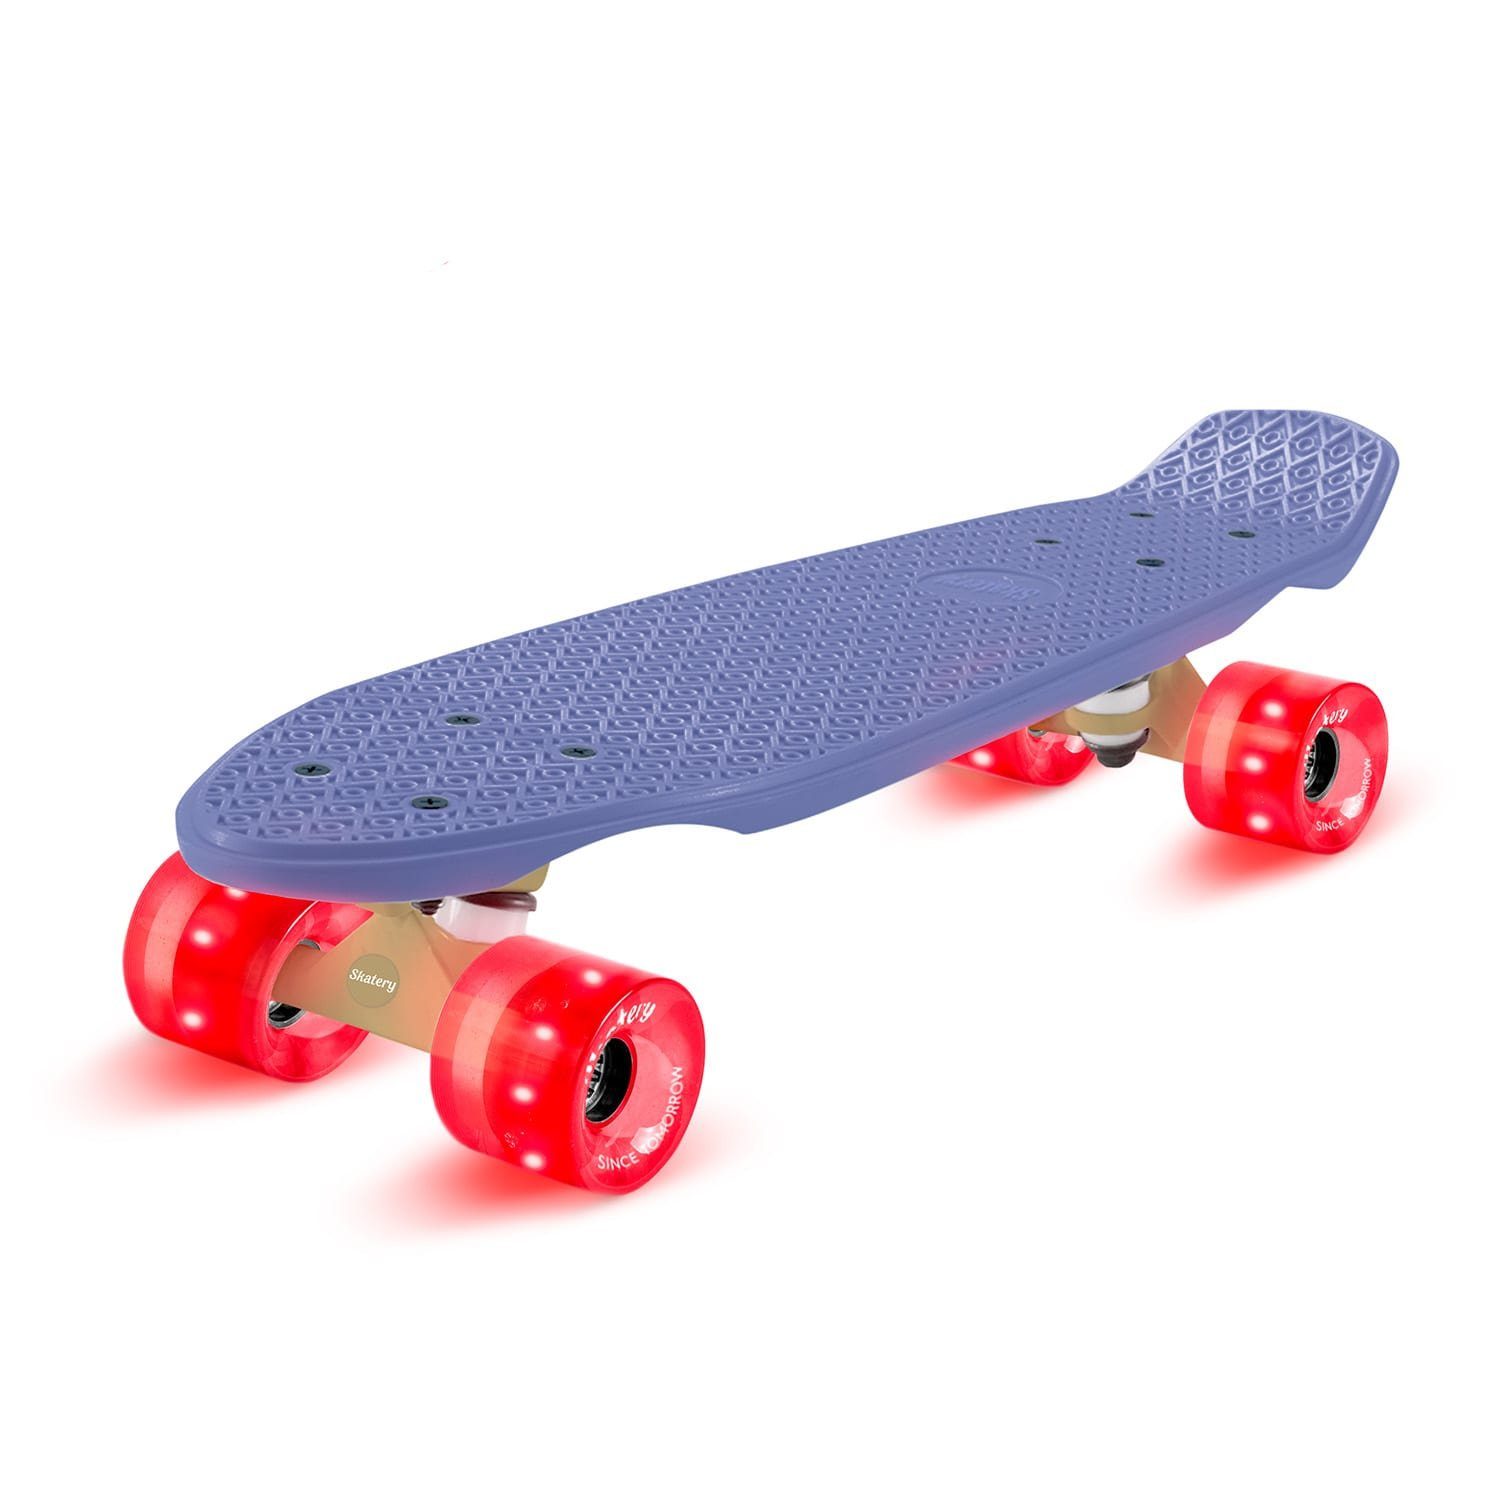 Cruiser pro Skateboard fun Mini Skateboard